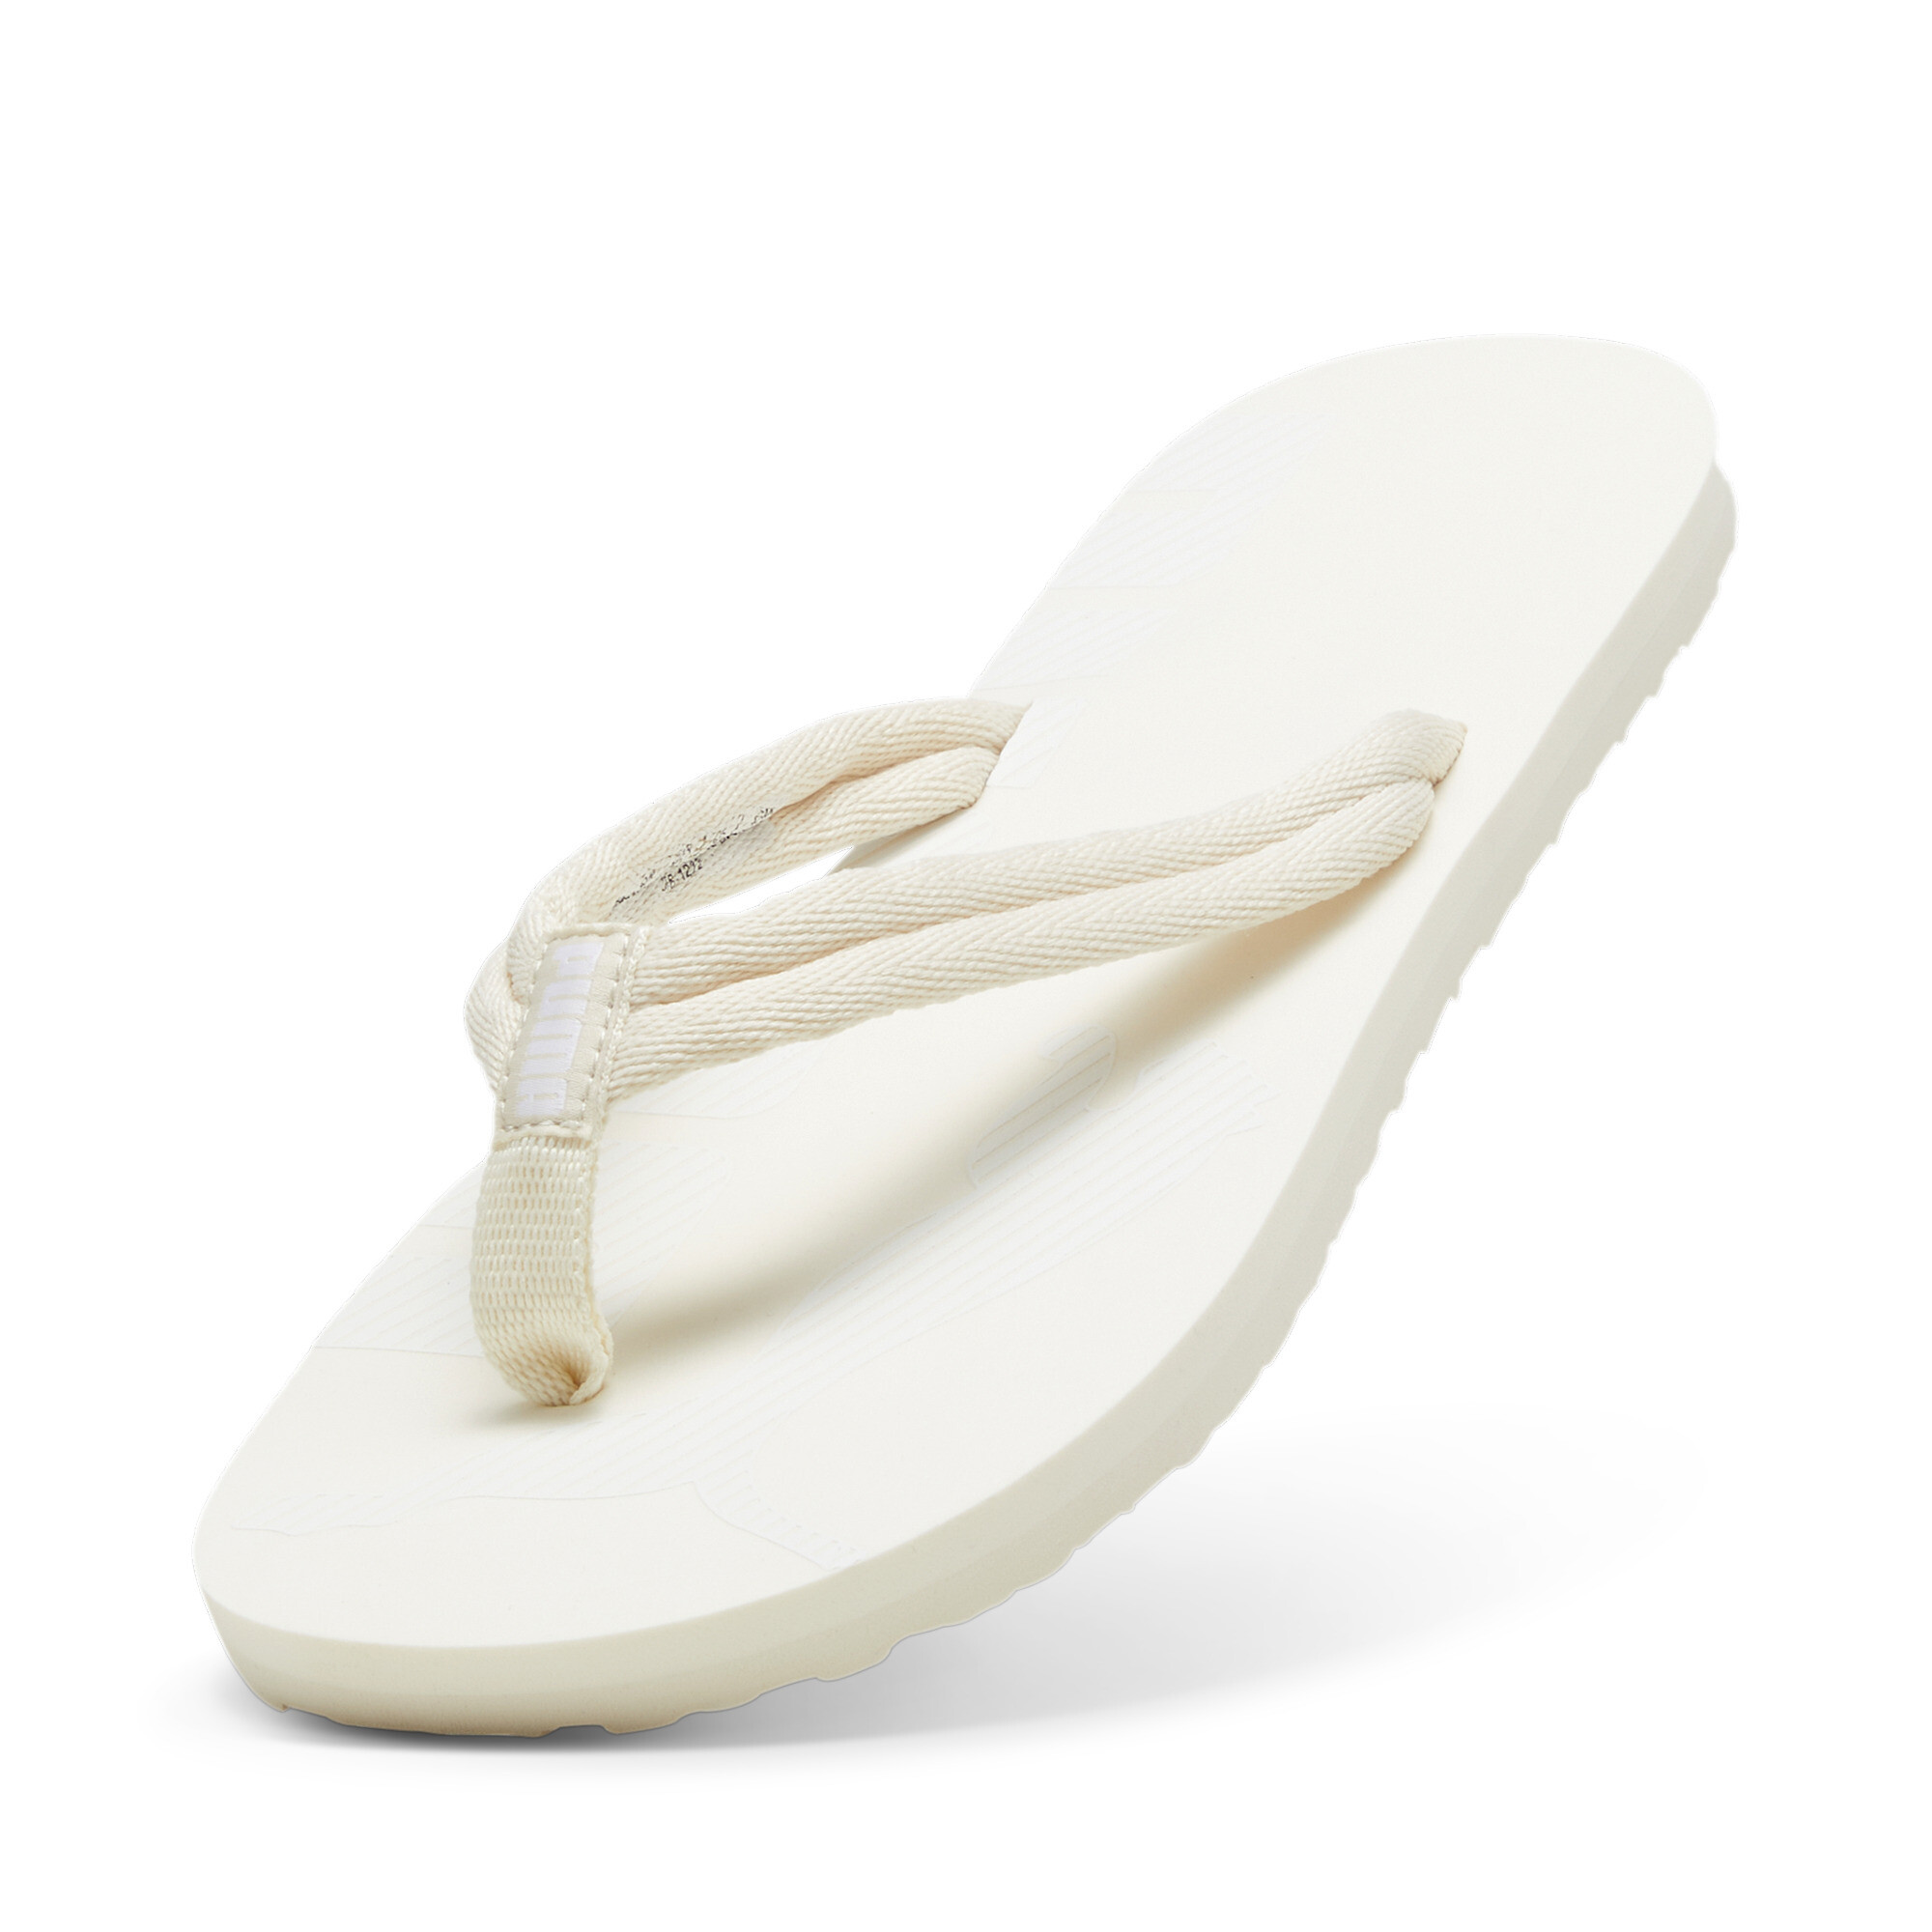 Men's PUMA Epic Flip V2 Sandals In White, Size EU 37